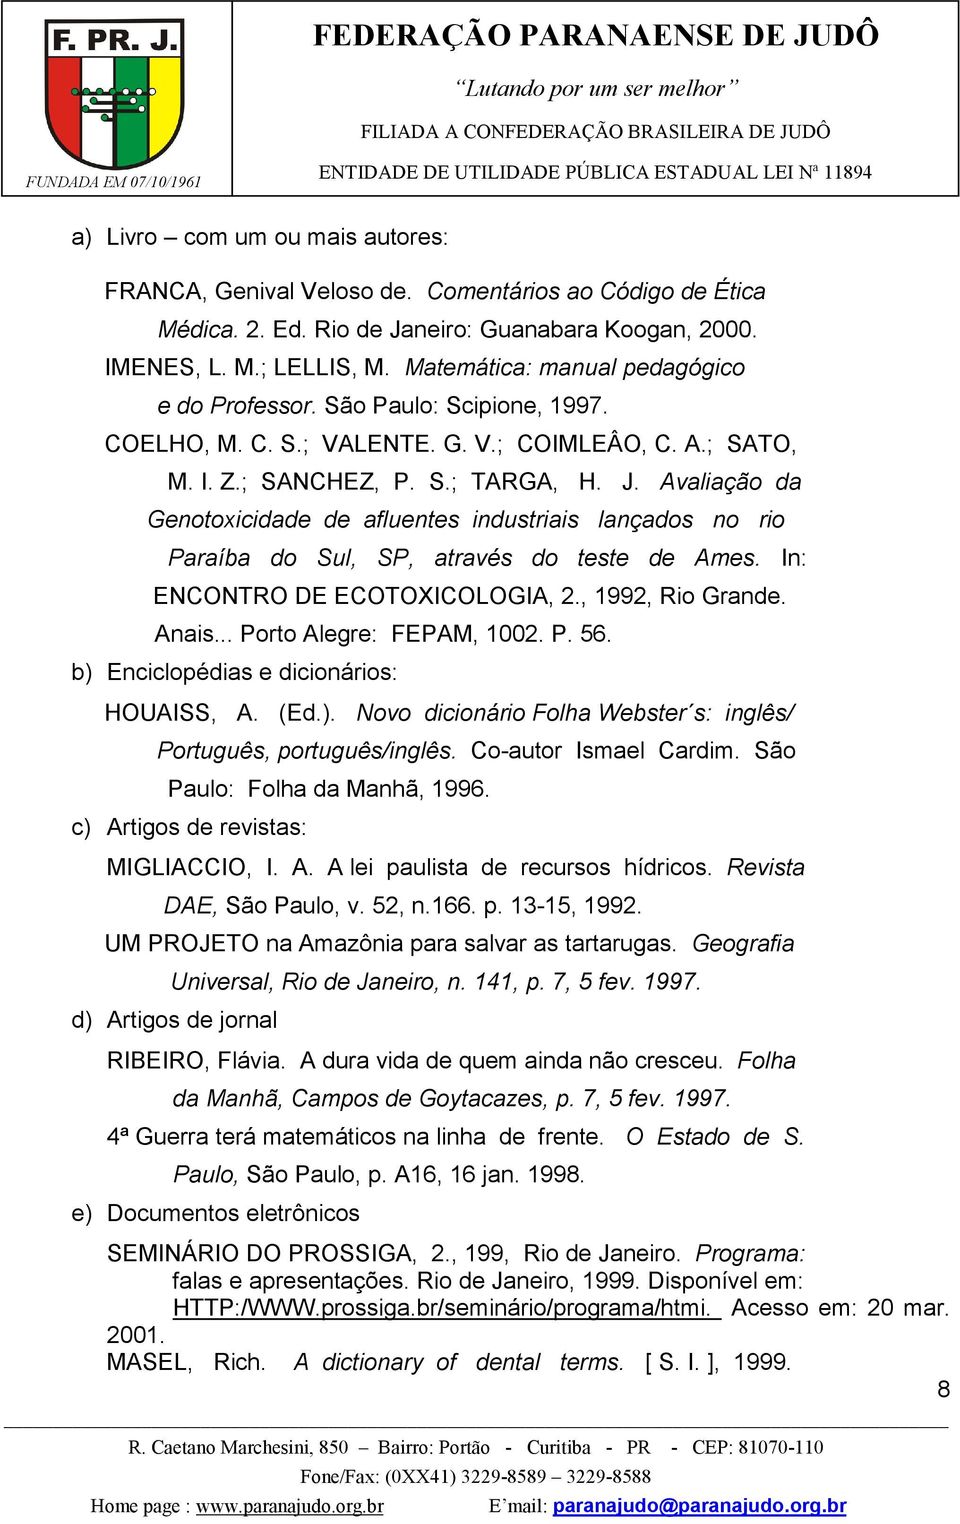 Avaliação da Genotoxicidade de afluentes industriais lançados no rio Paraíba do Sul, SP, através do teste de Ames. In: ENCONTRO DE ECOTOXICOLOGIA, 2., 1992, Rio Grande. Anais.